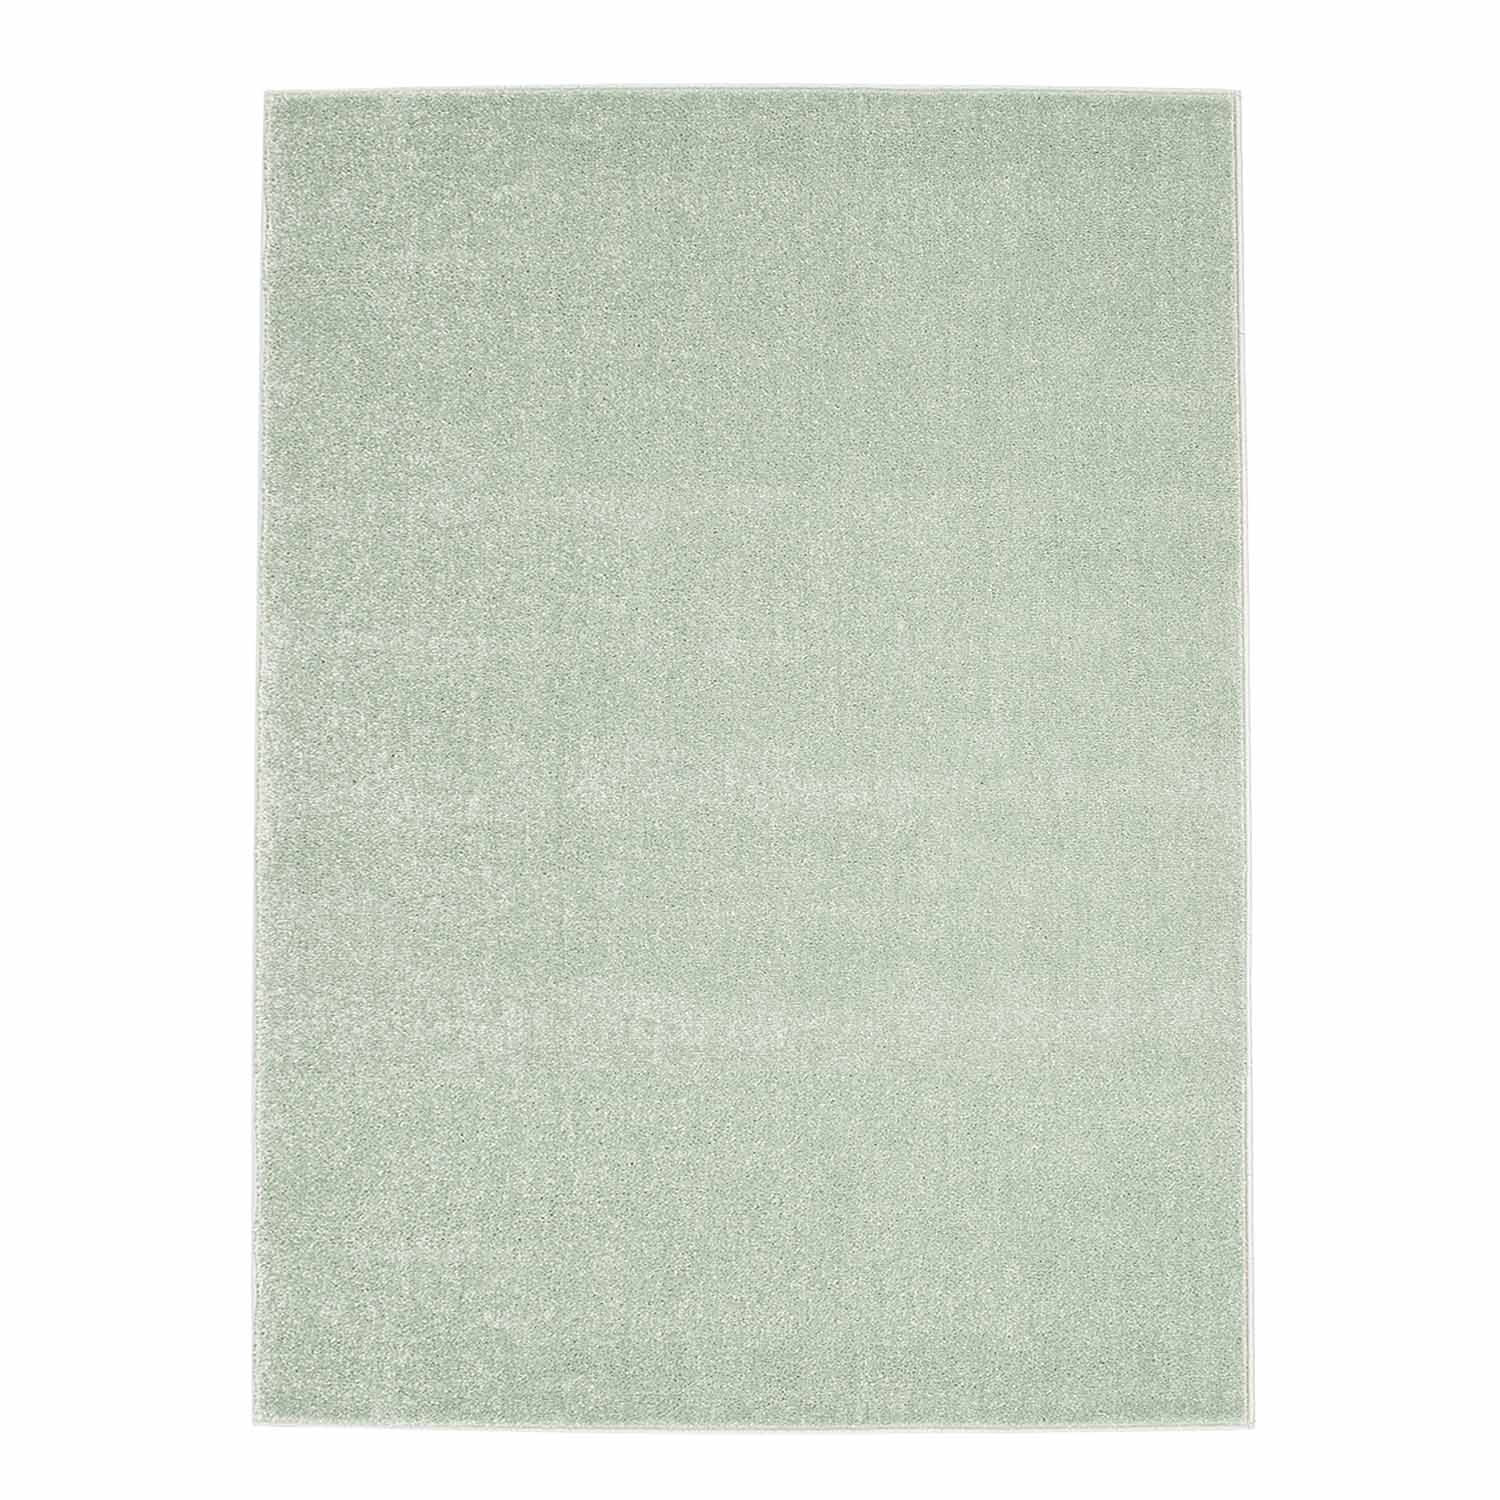 Wilton rug - Moda (green)